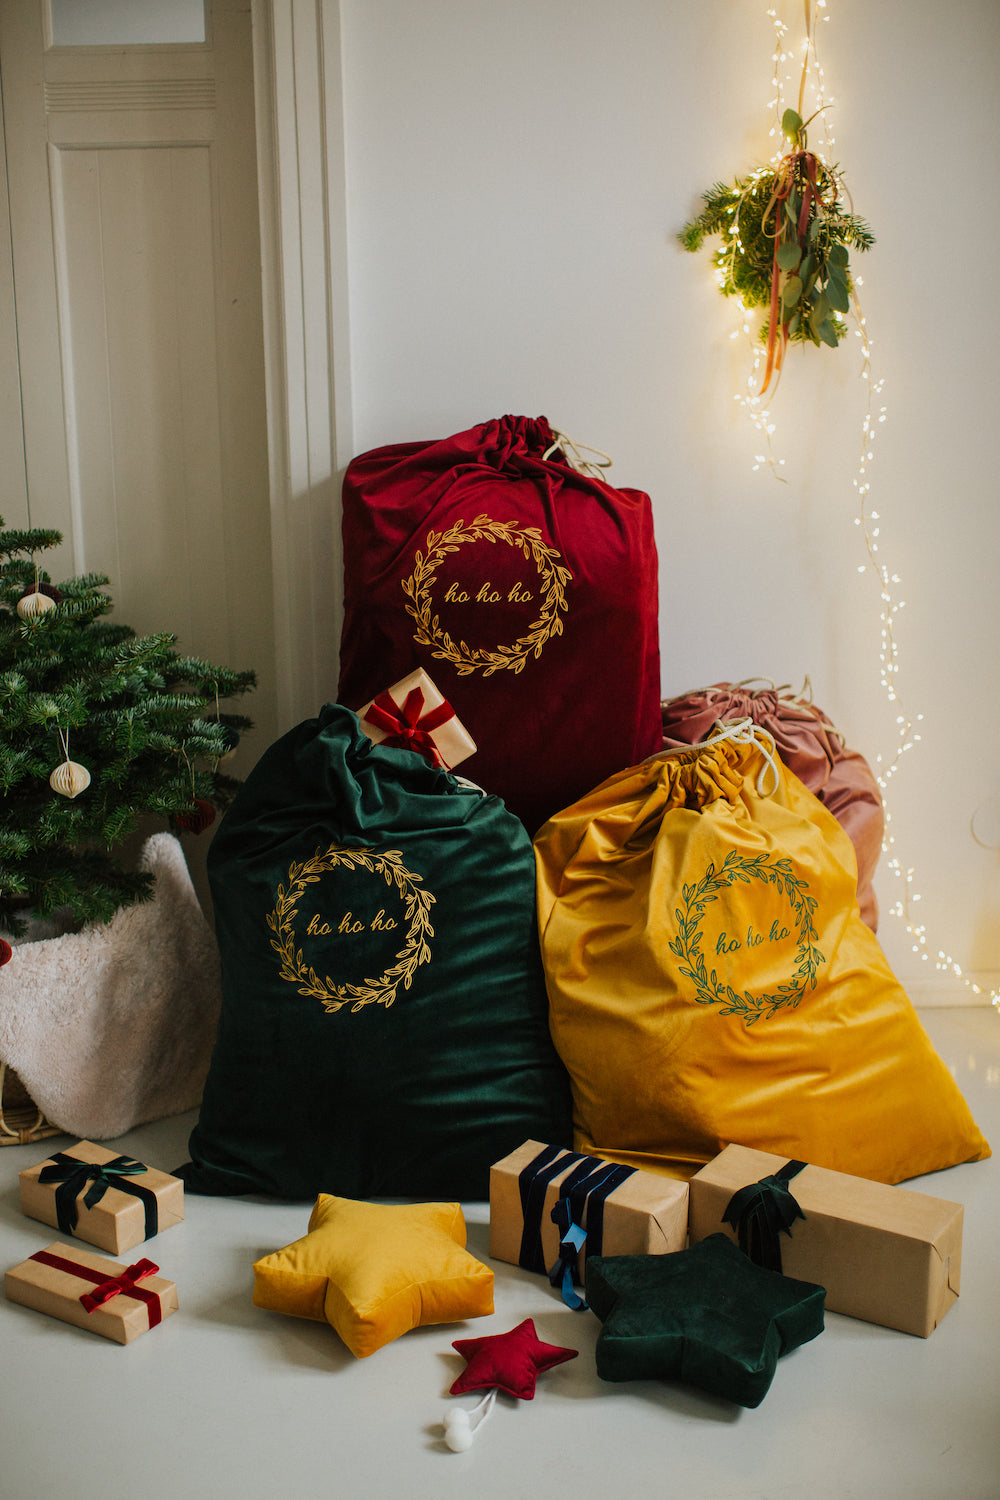 świąteczne worki na prezenty w trzech kolorach od Bettys Home obok choinki i prezentów